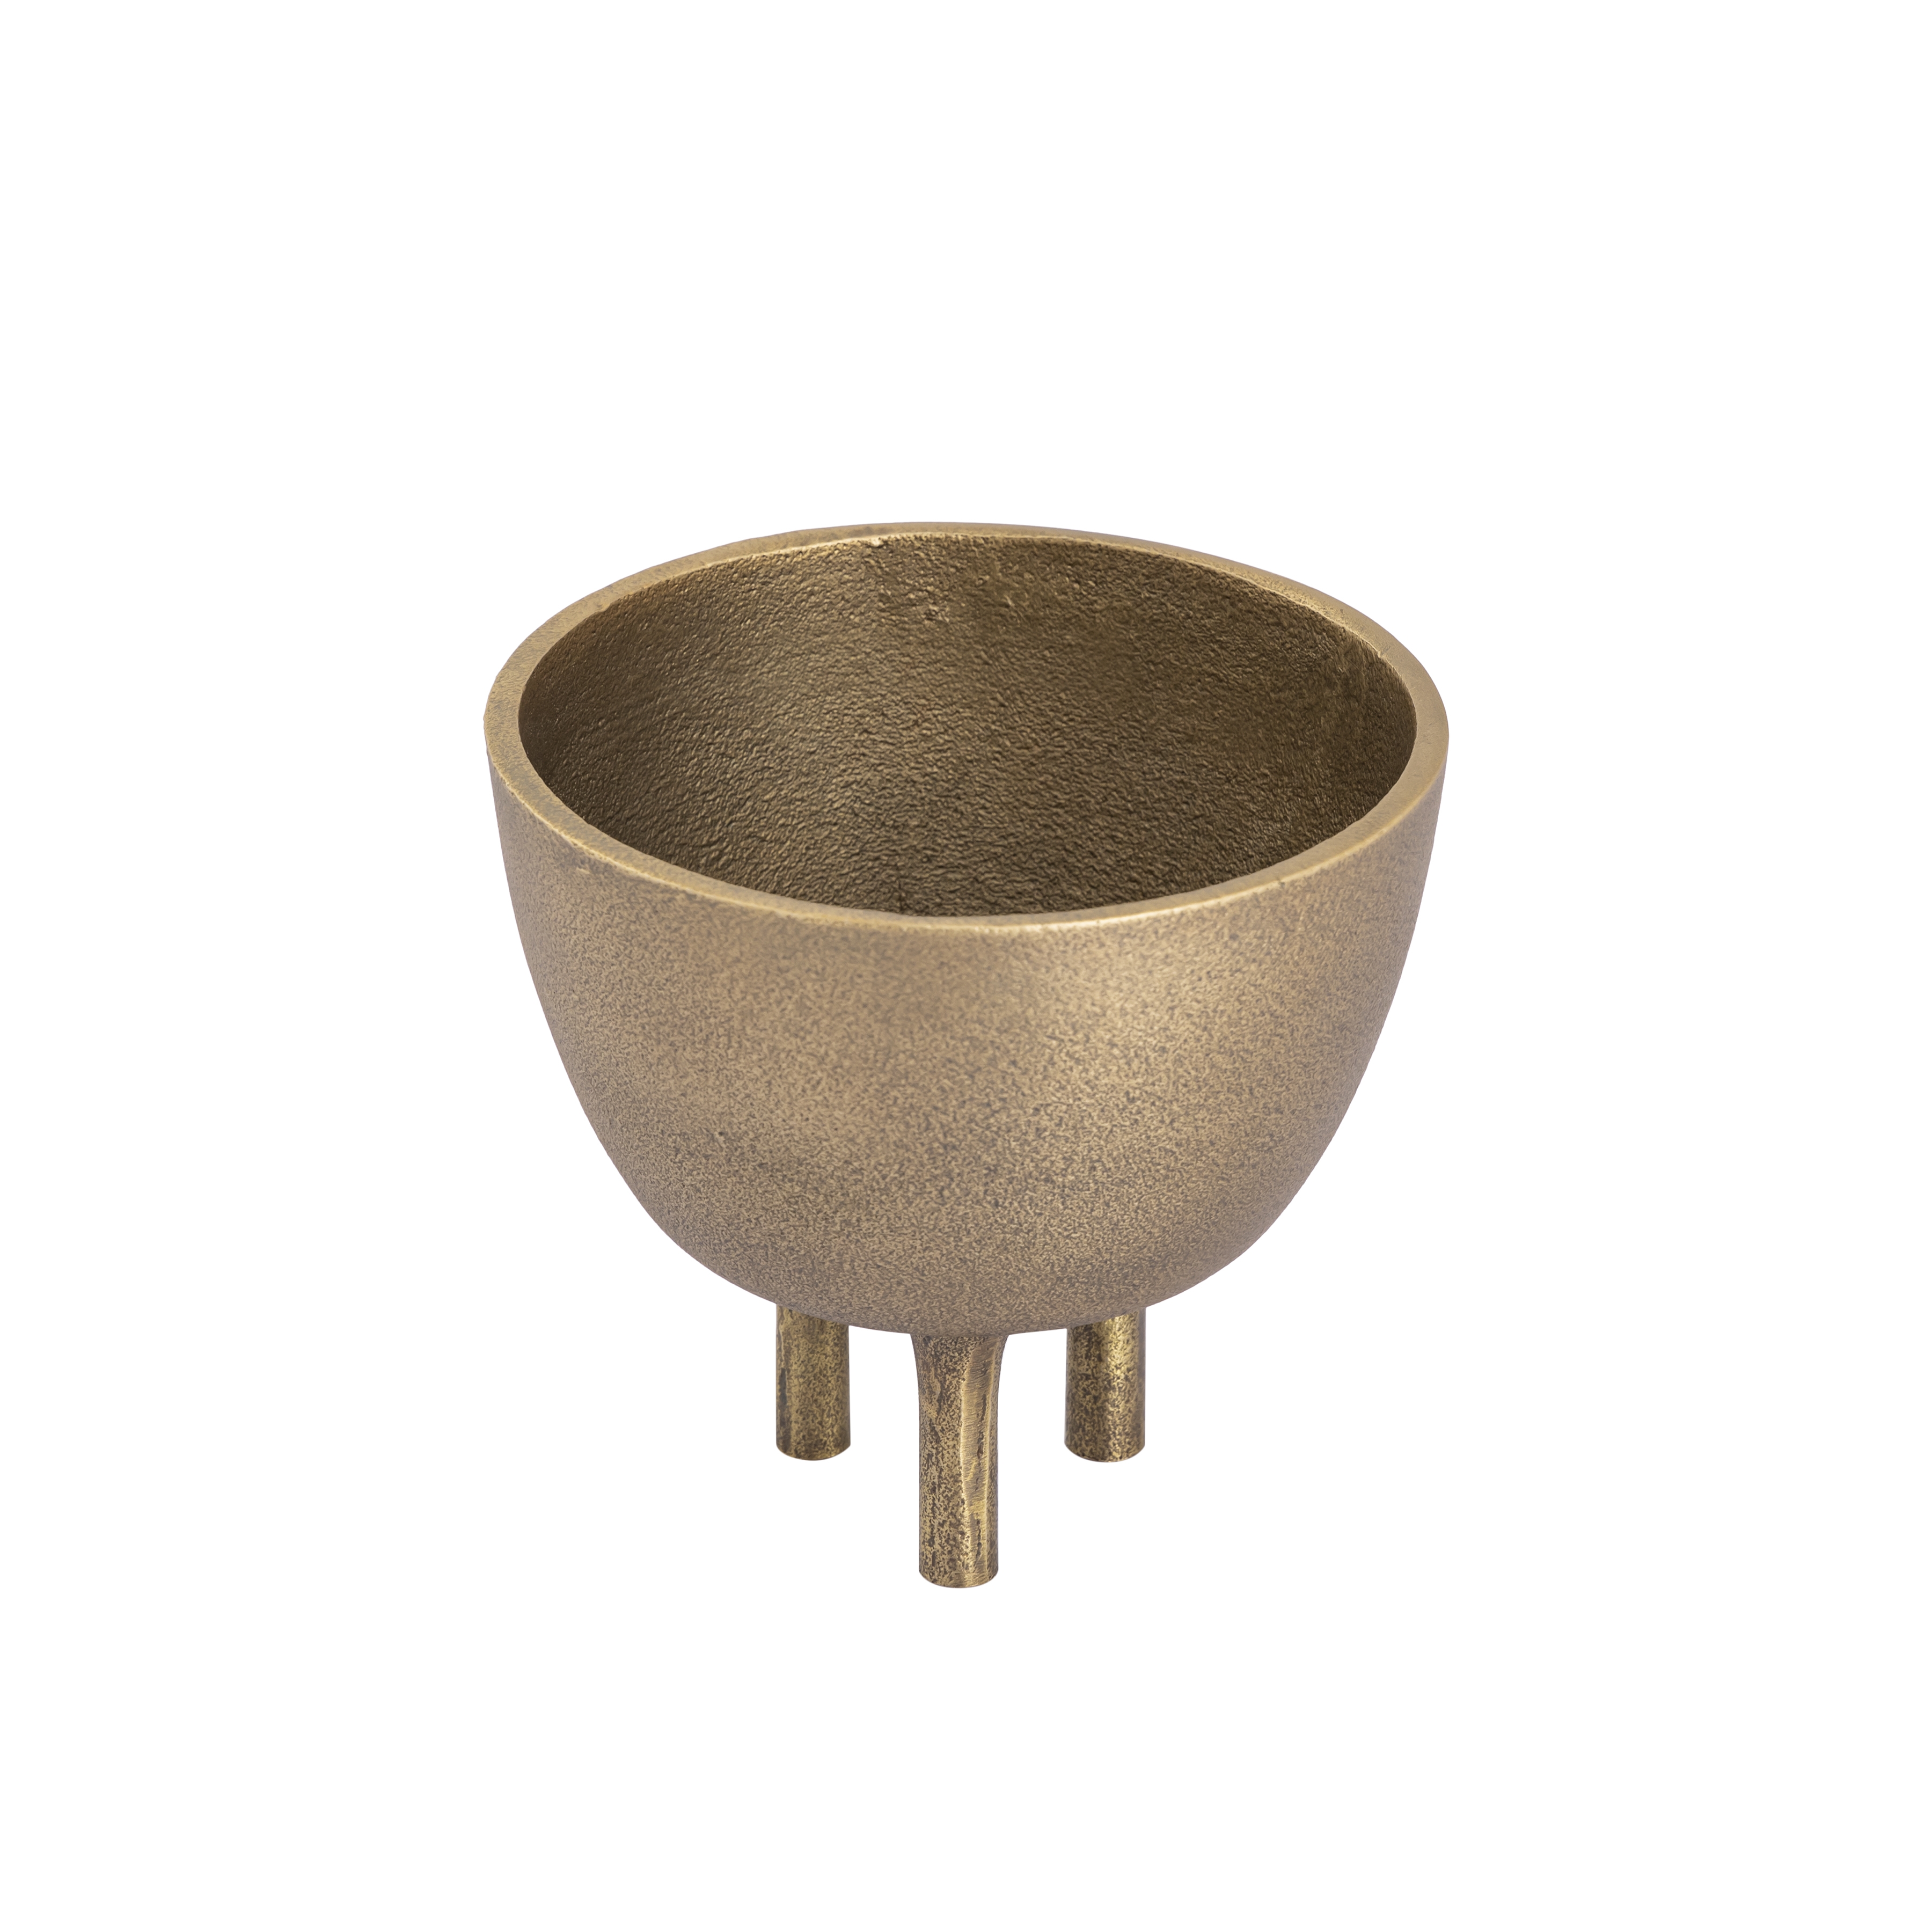 Kiser Bowl - Small Brass - Image 5